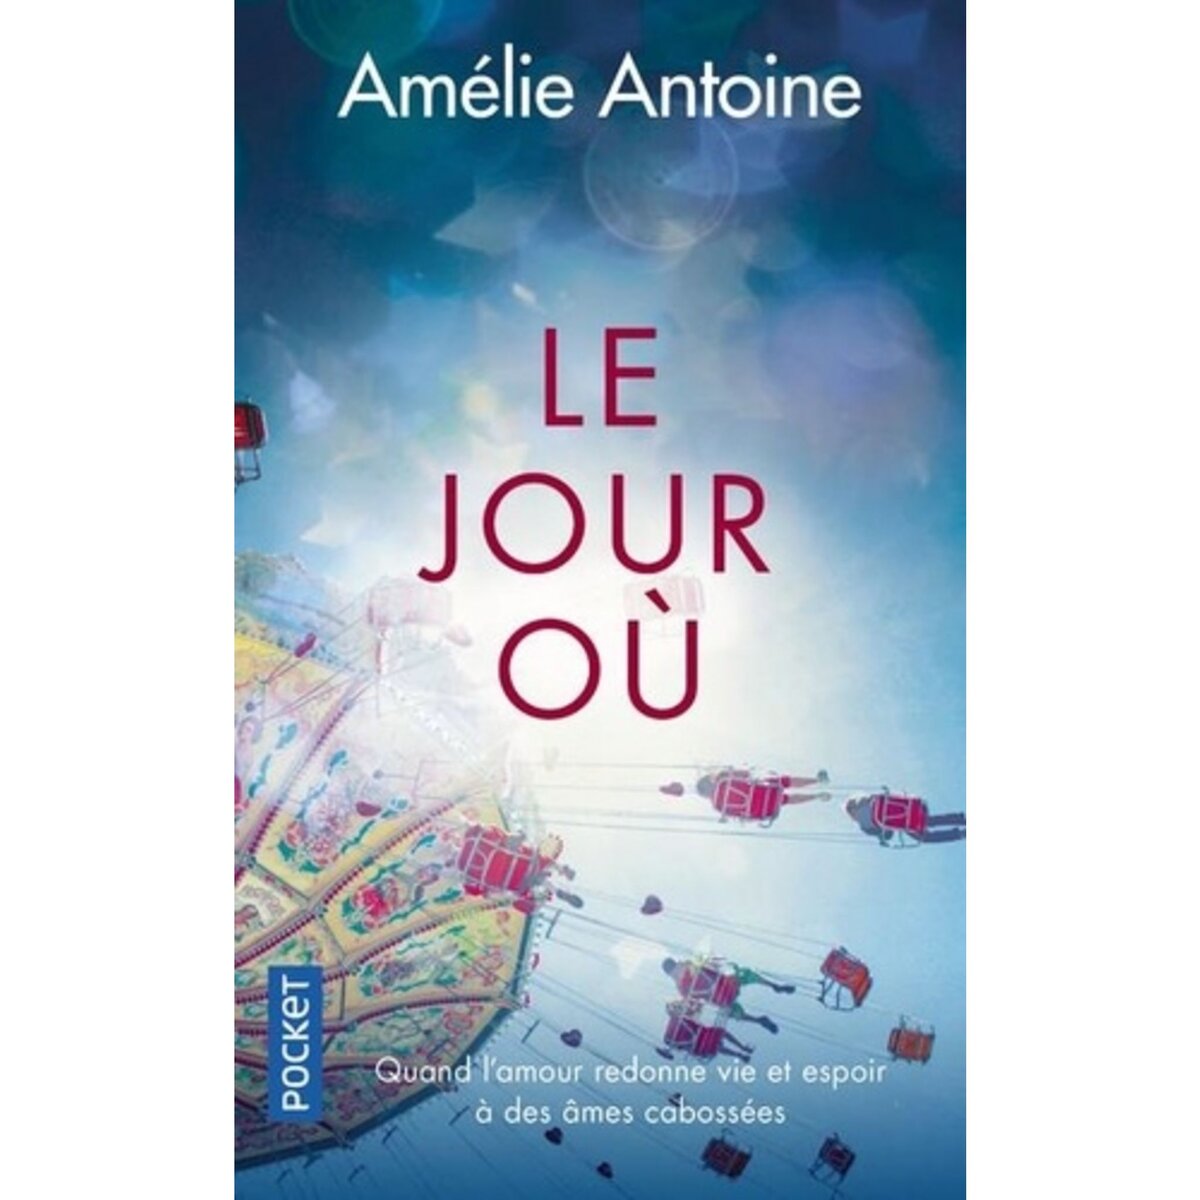  LE JOUR OU, Antoine Amélie